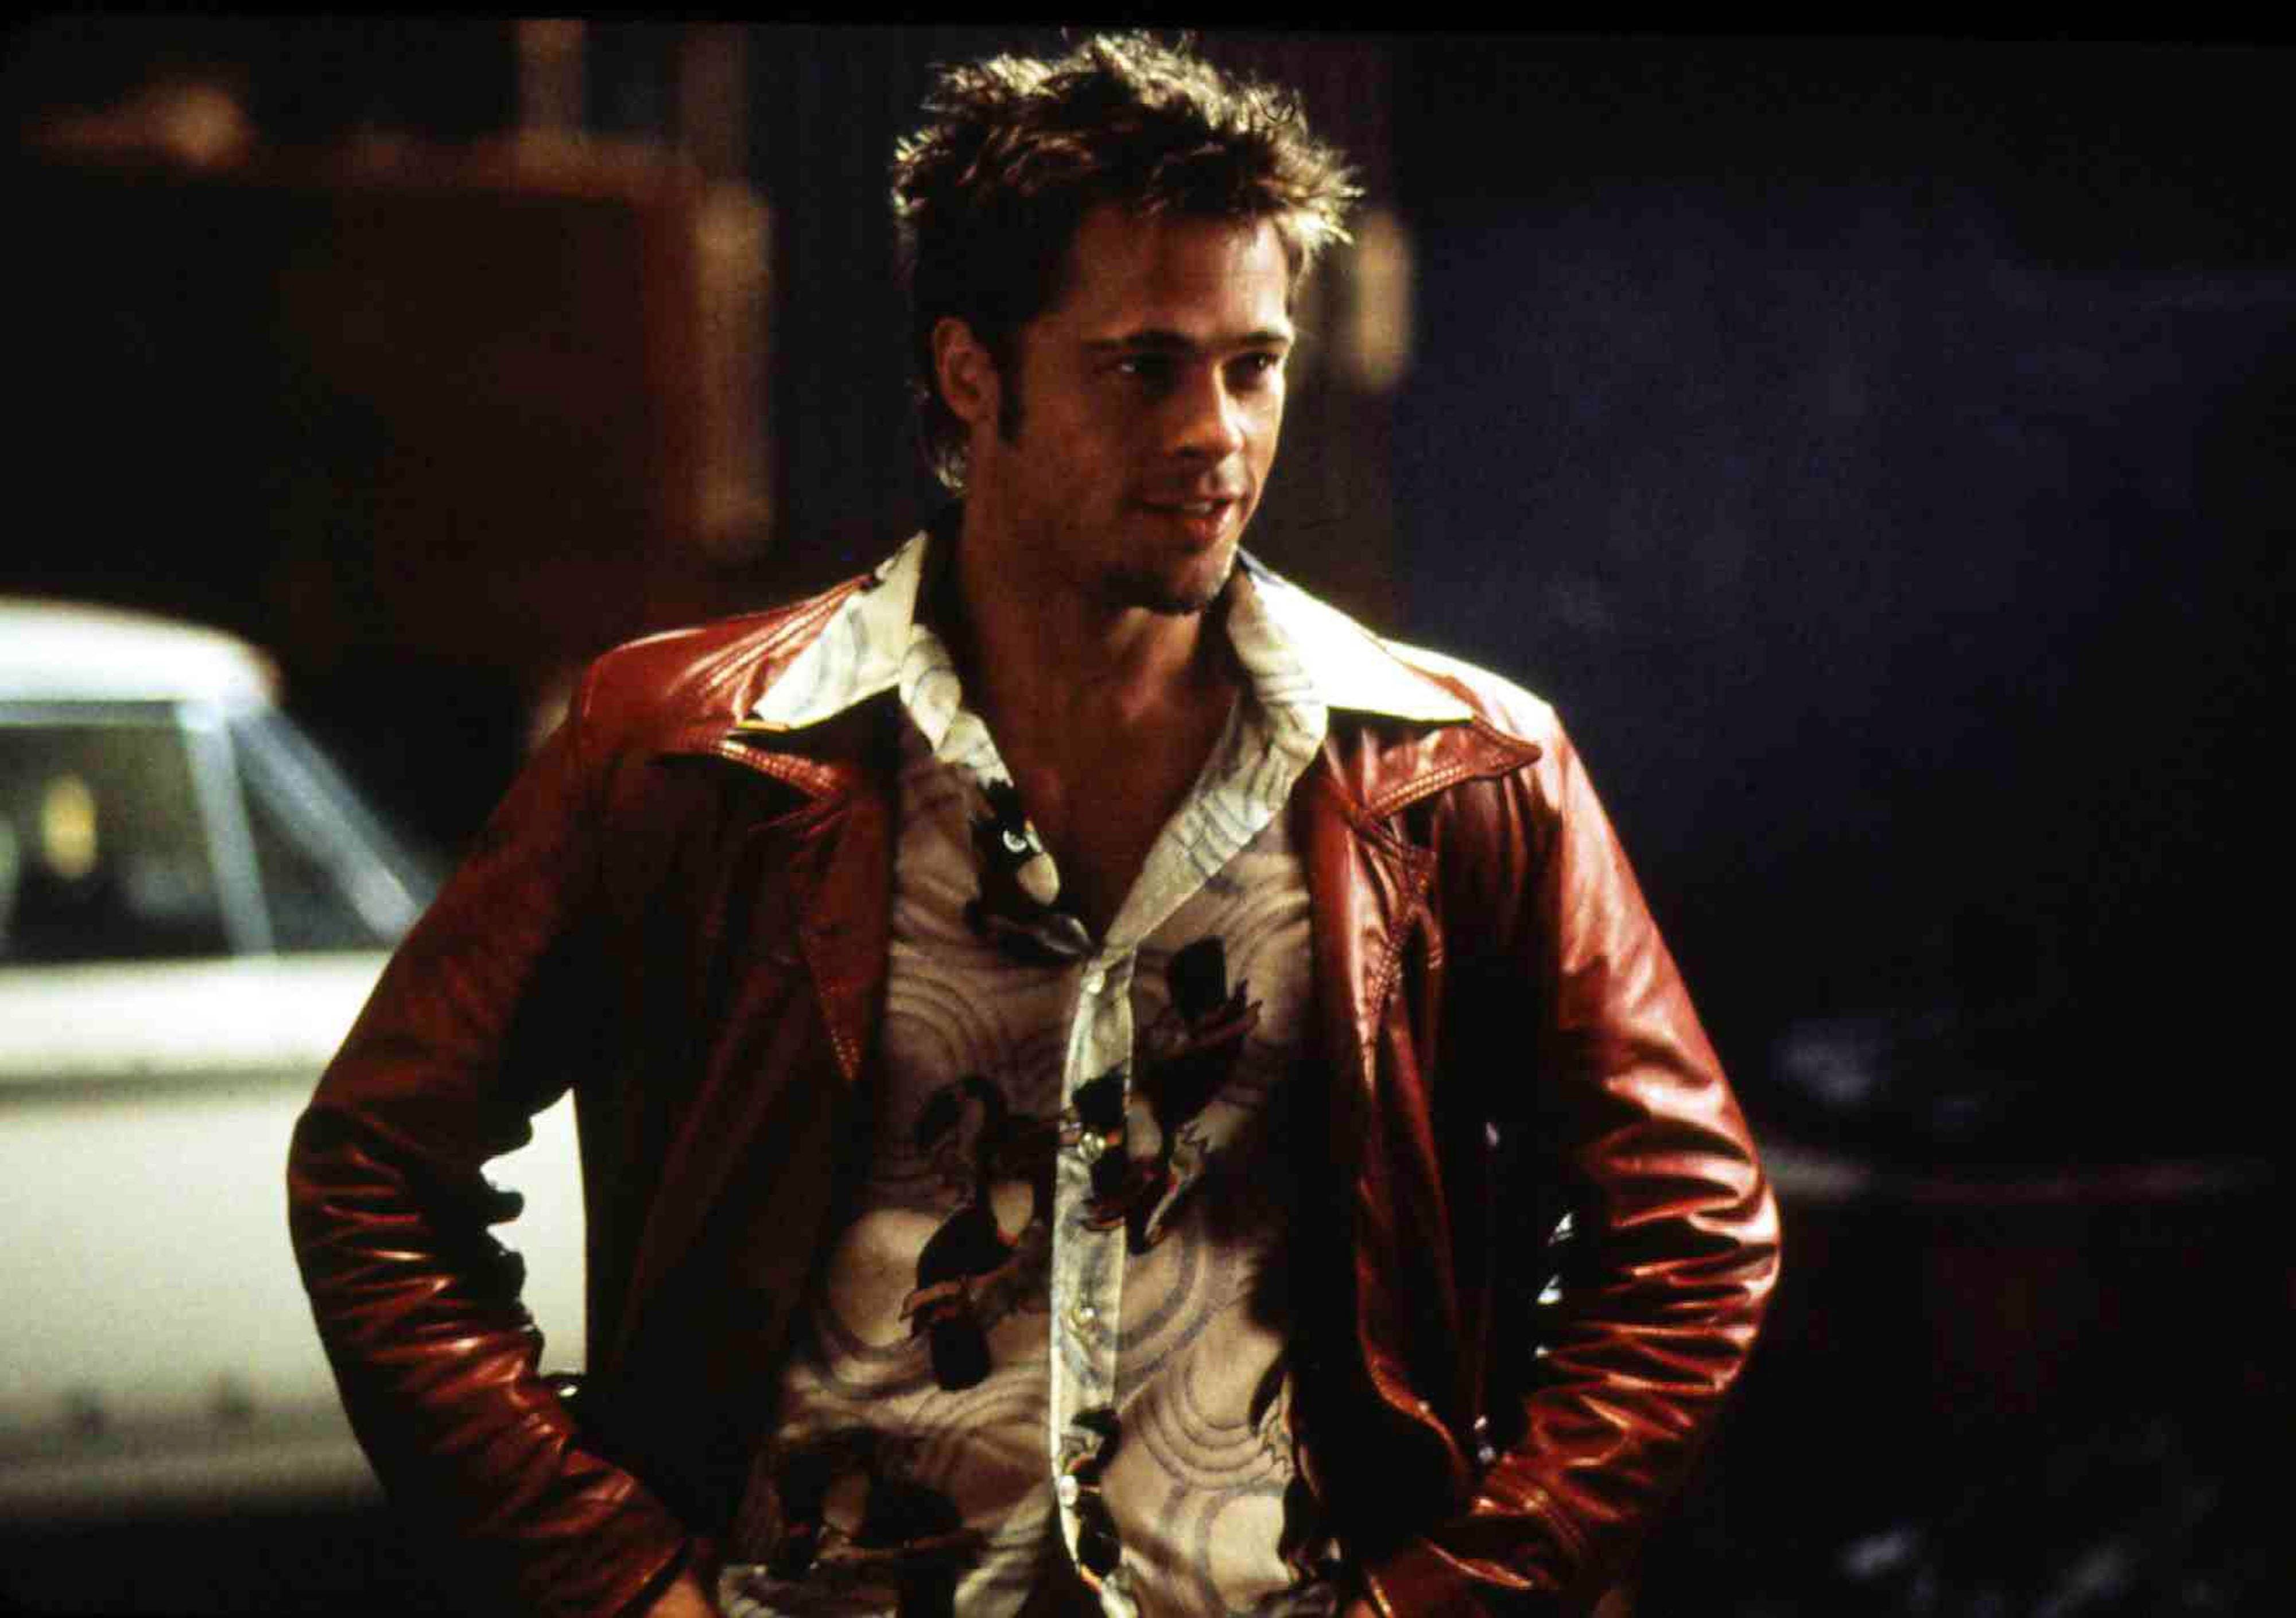 Brad Pitt in "Fight Club" (1999). © Alam